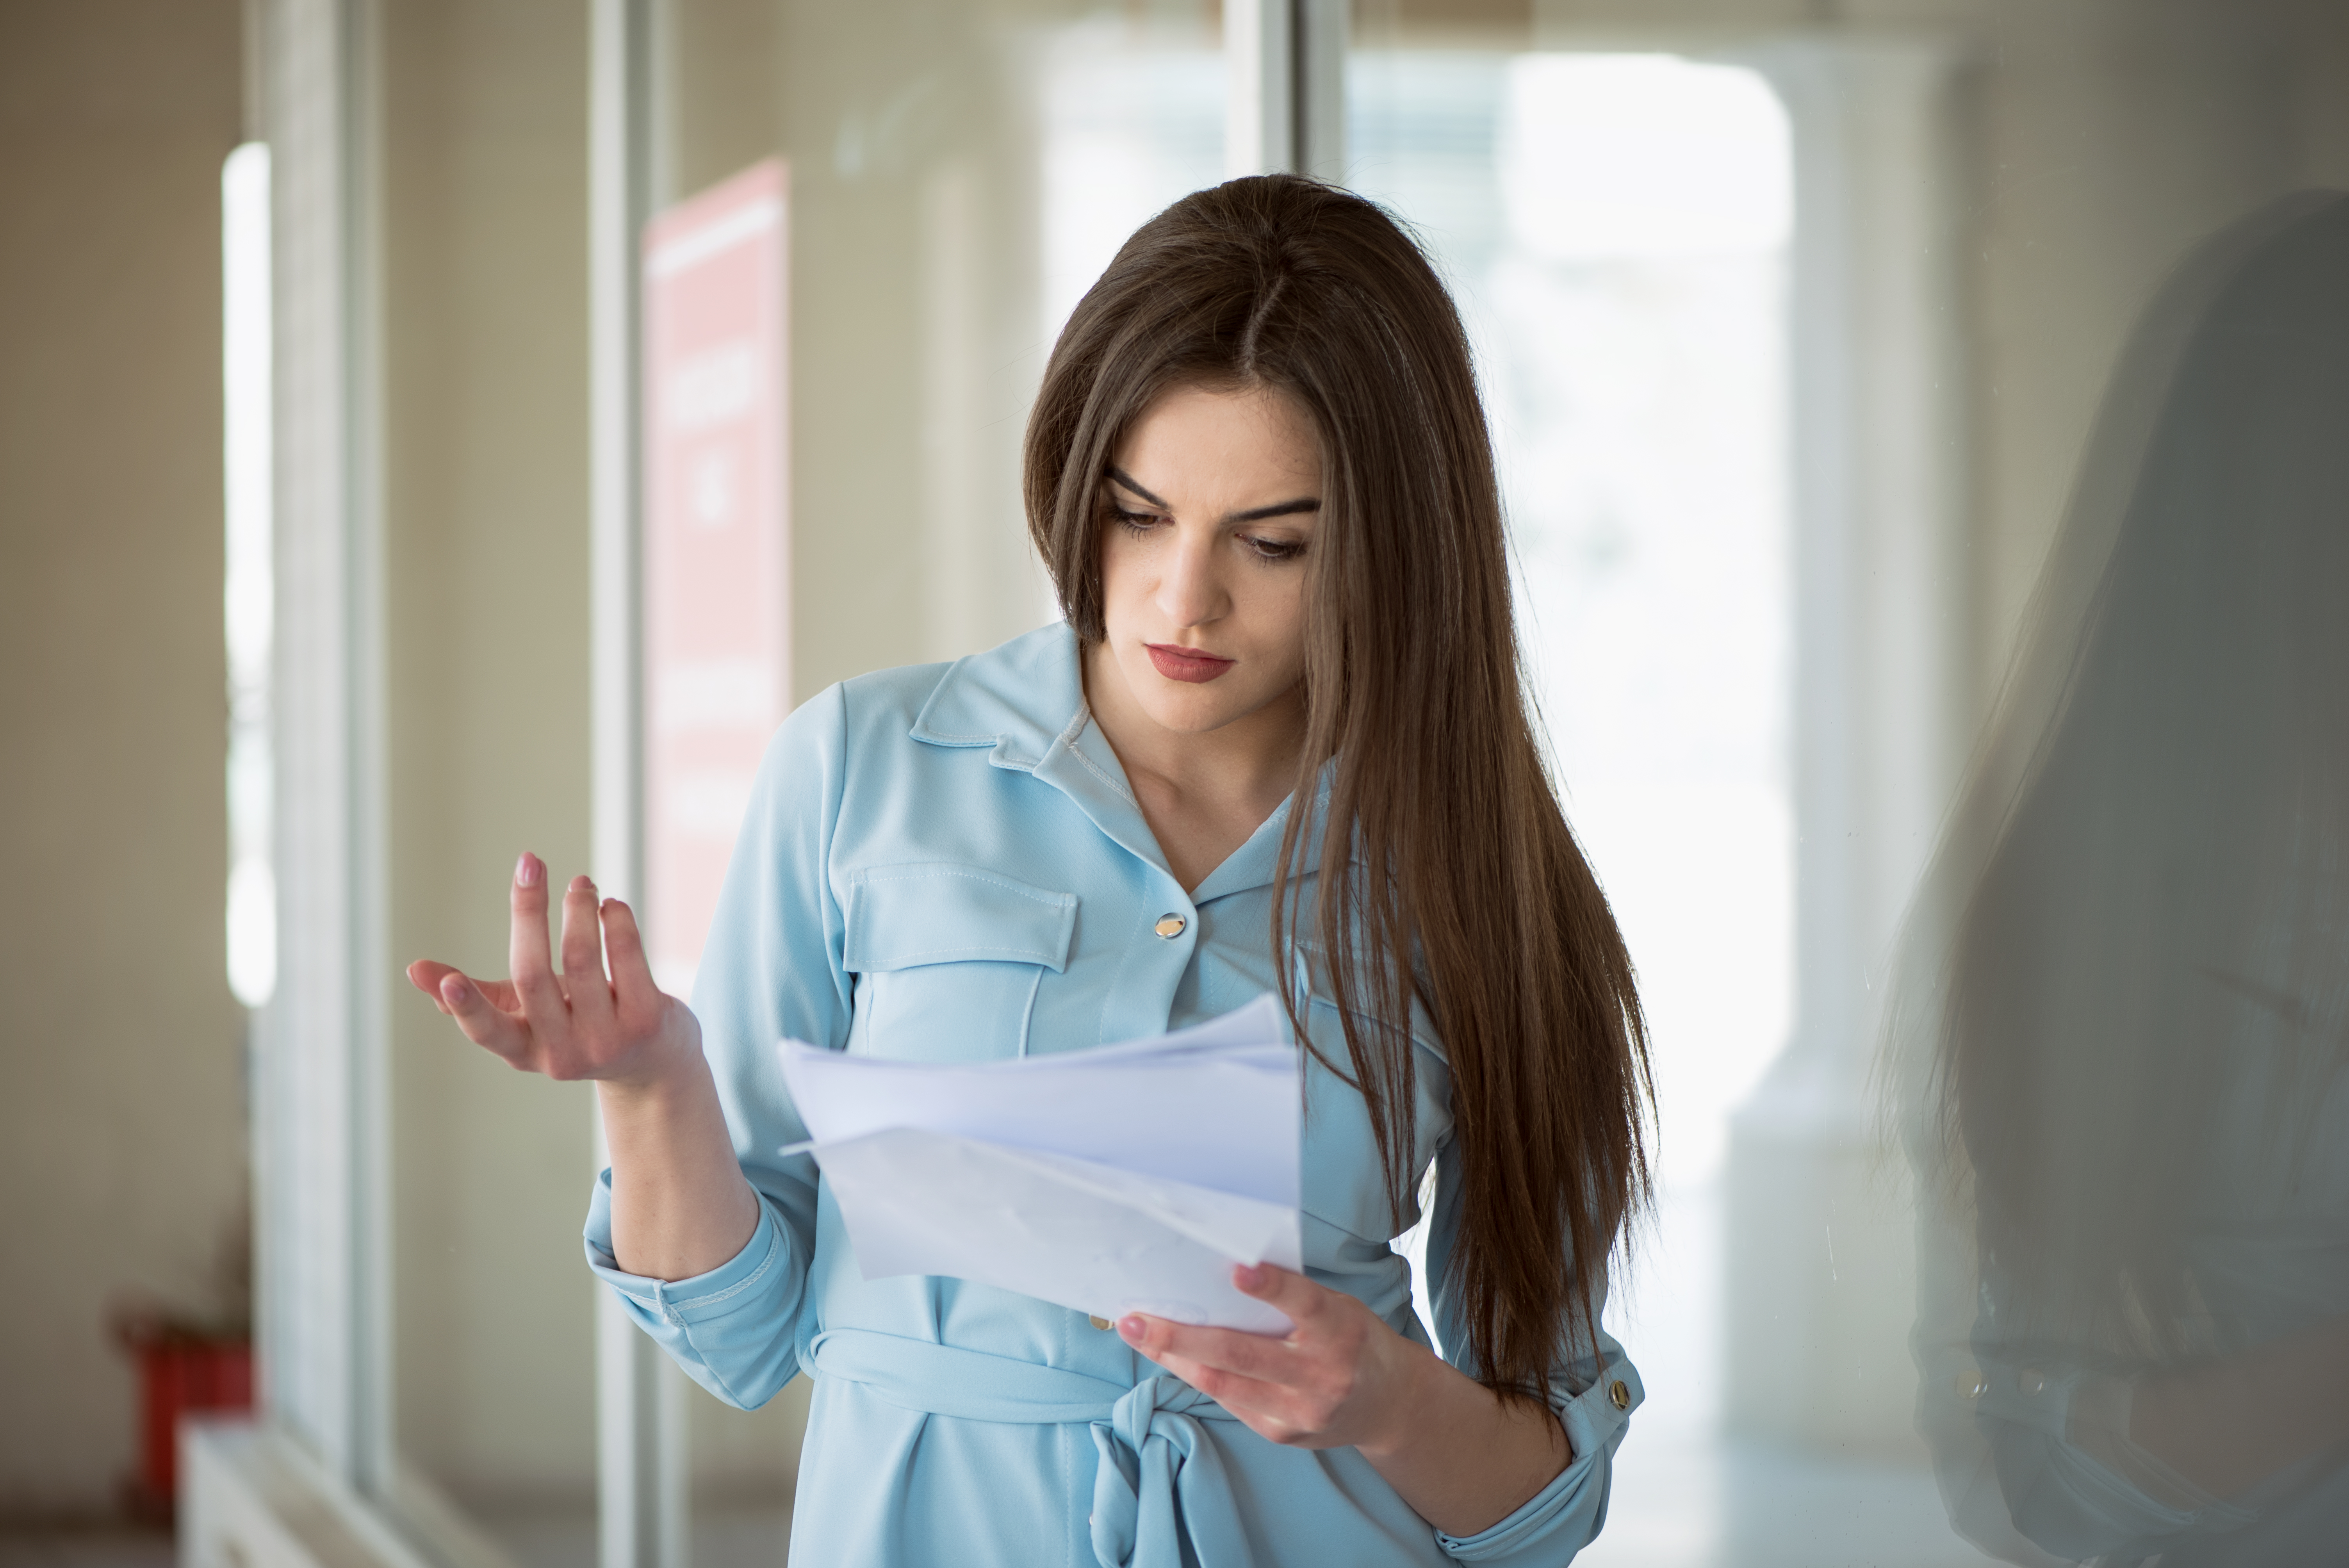 Une femme lisant une note avec incrédulité | Source : Getty Images